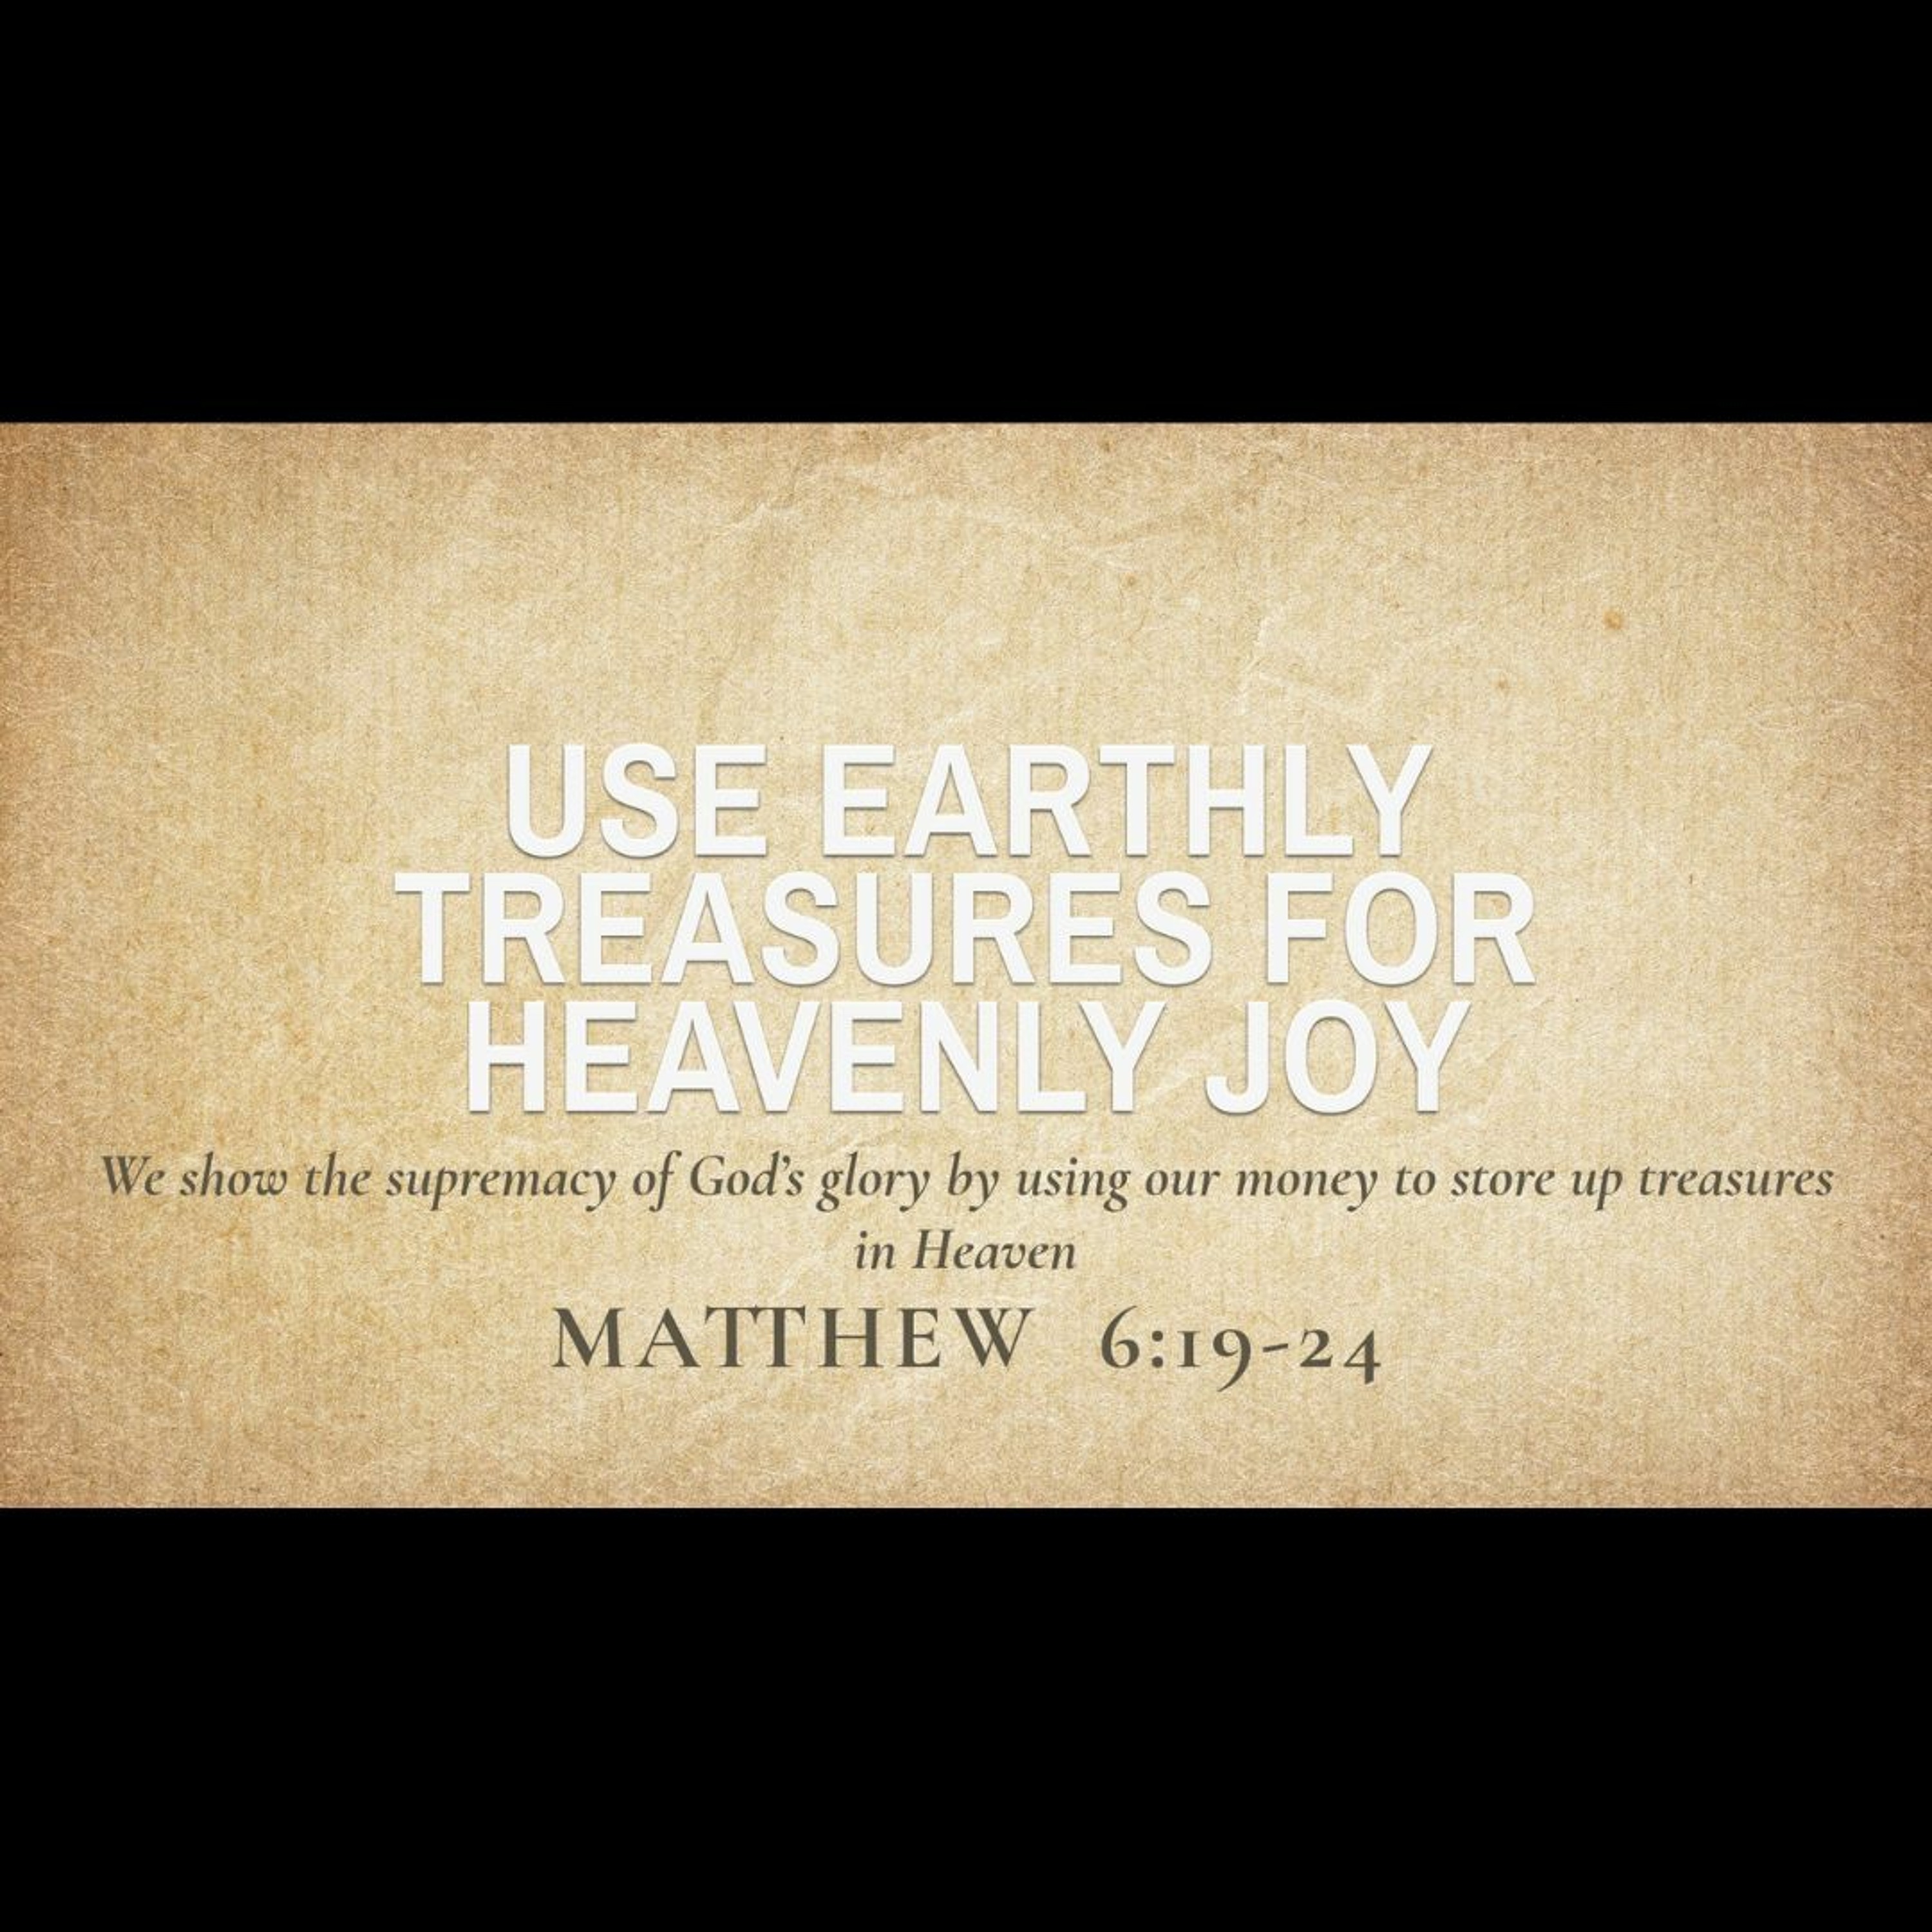 Use Earthly Treasures for Heavenly Joy (Matthew 6:19-24)